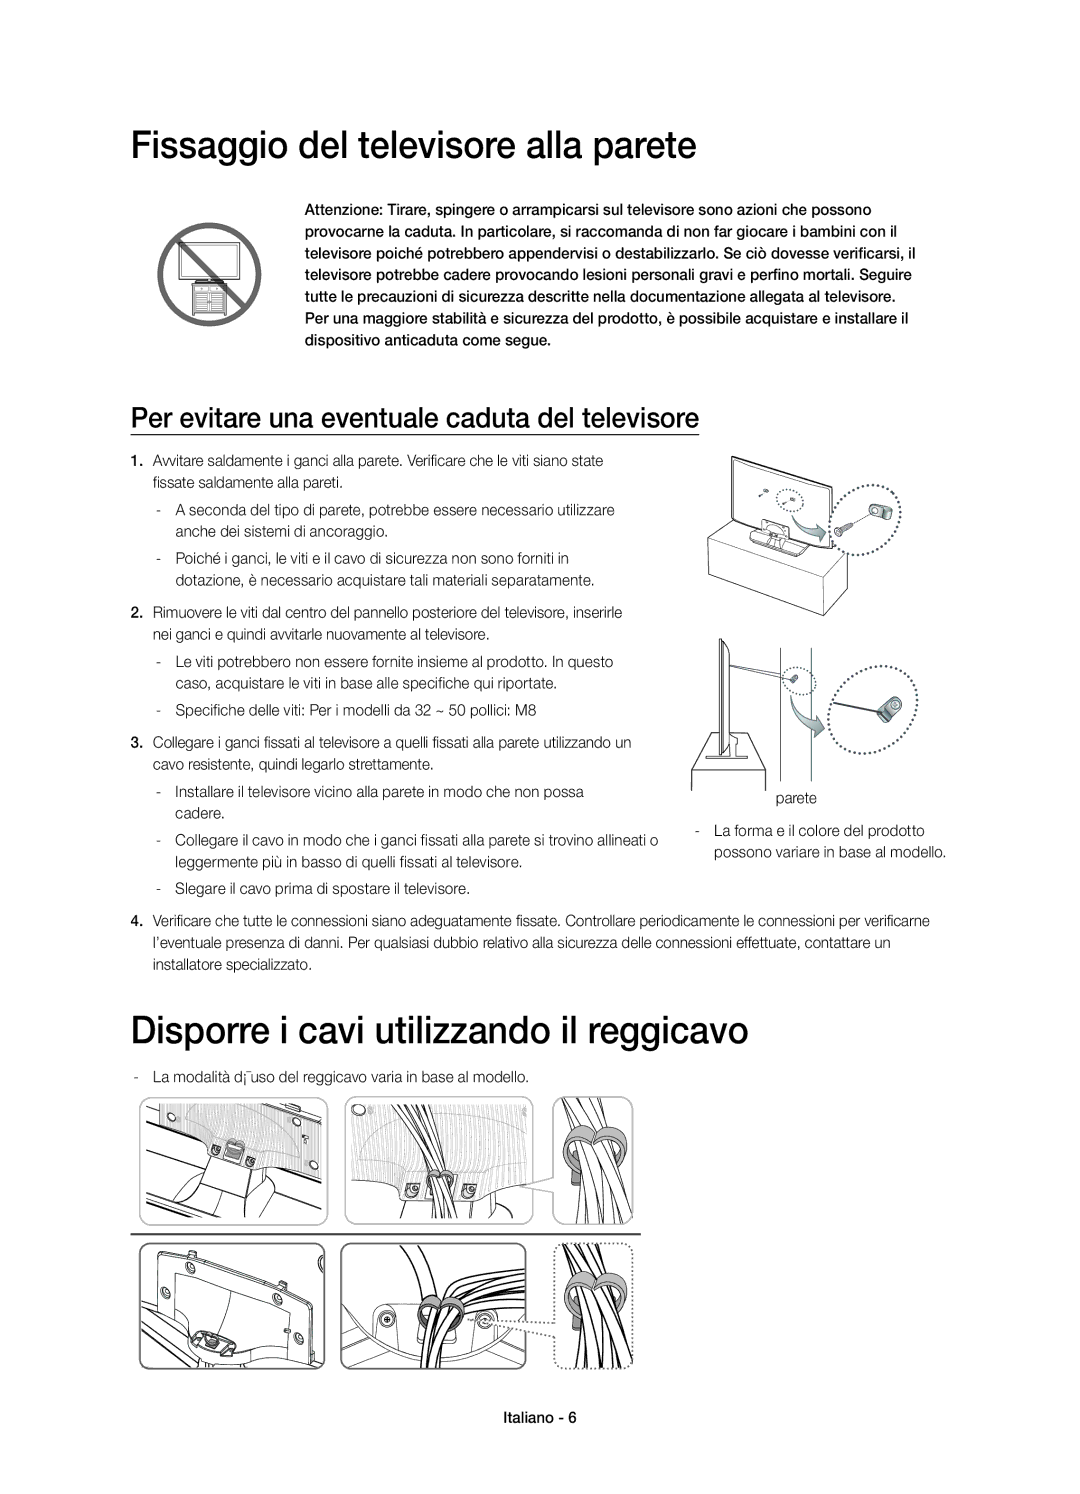 Samsung UE50H5570SSXZG, UE32H5570SSXZG manual Fissaggio del televisore alla parete, Disporre i cavi utilizzando il reggicavo 